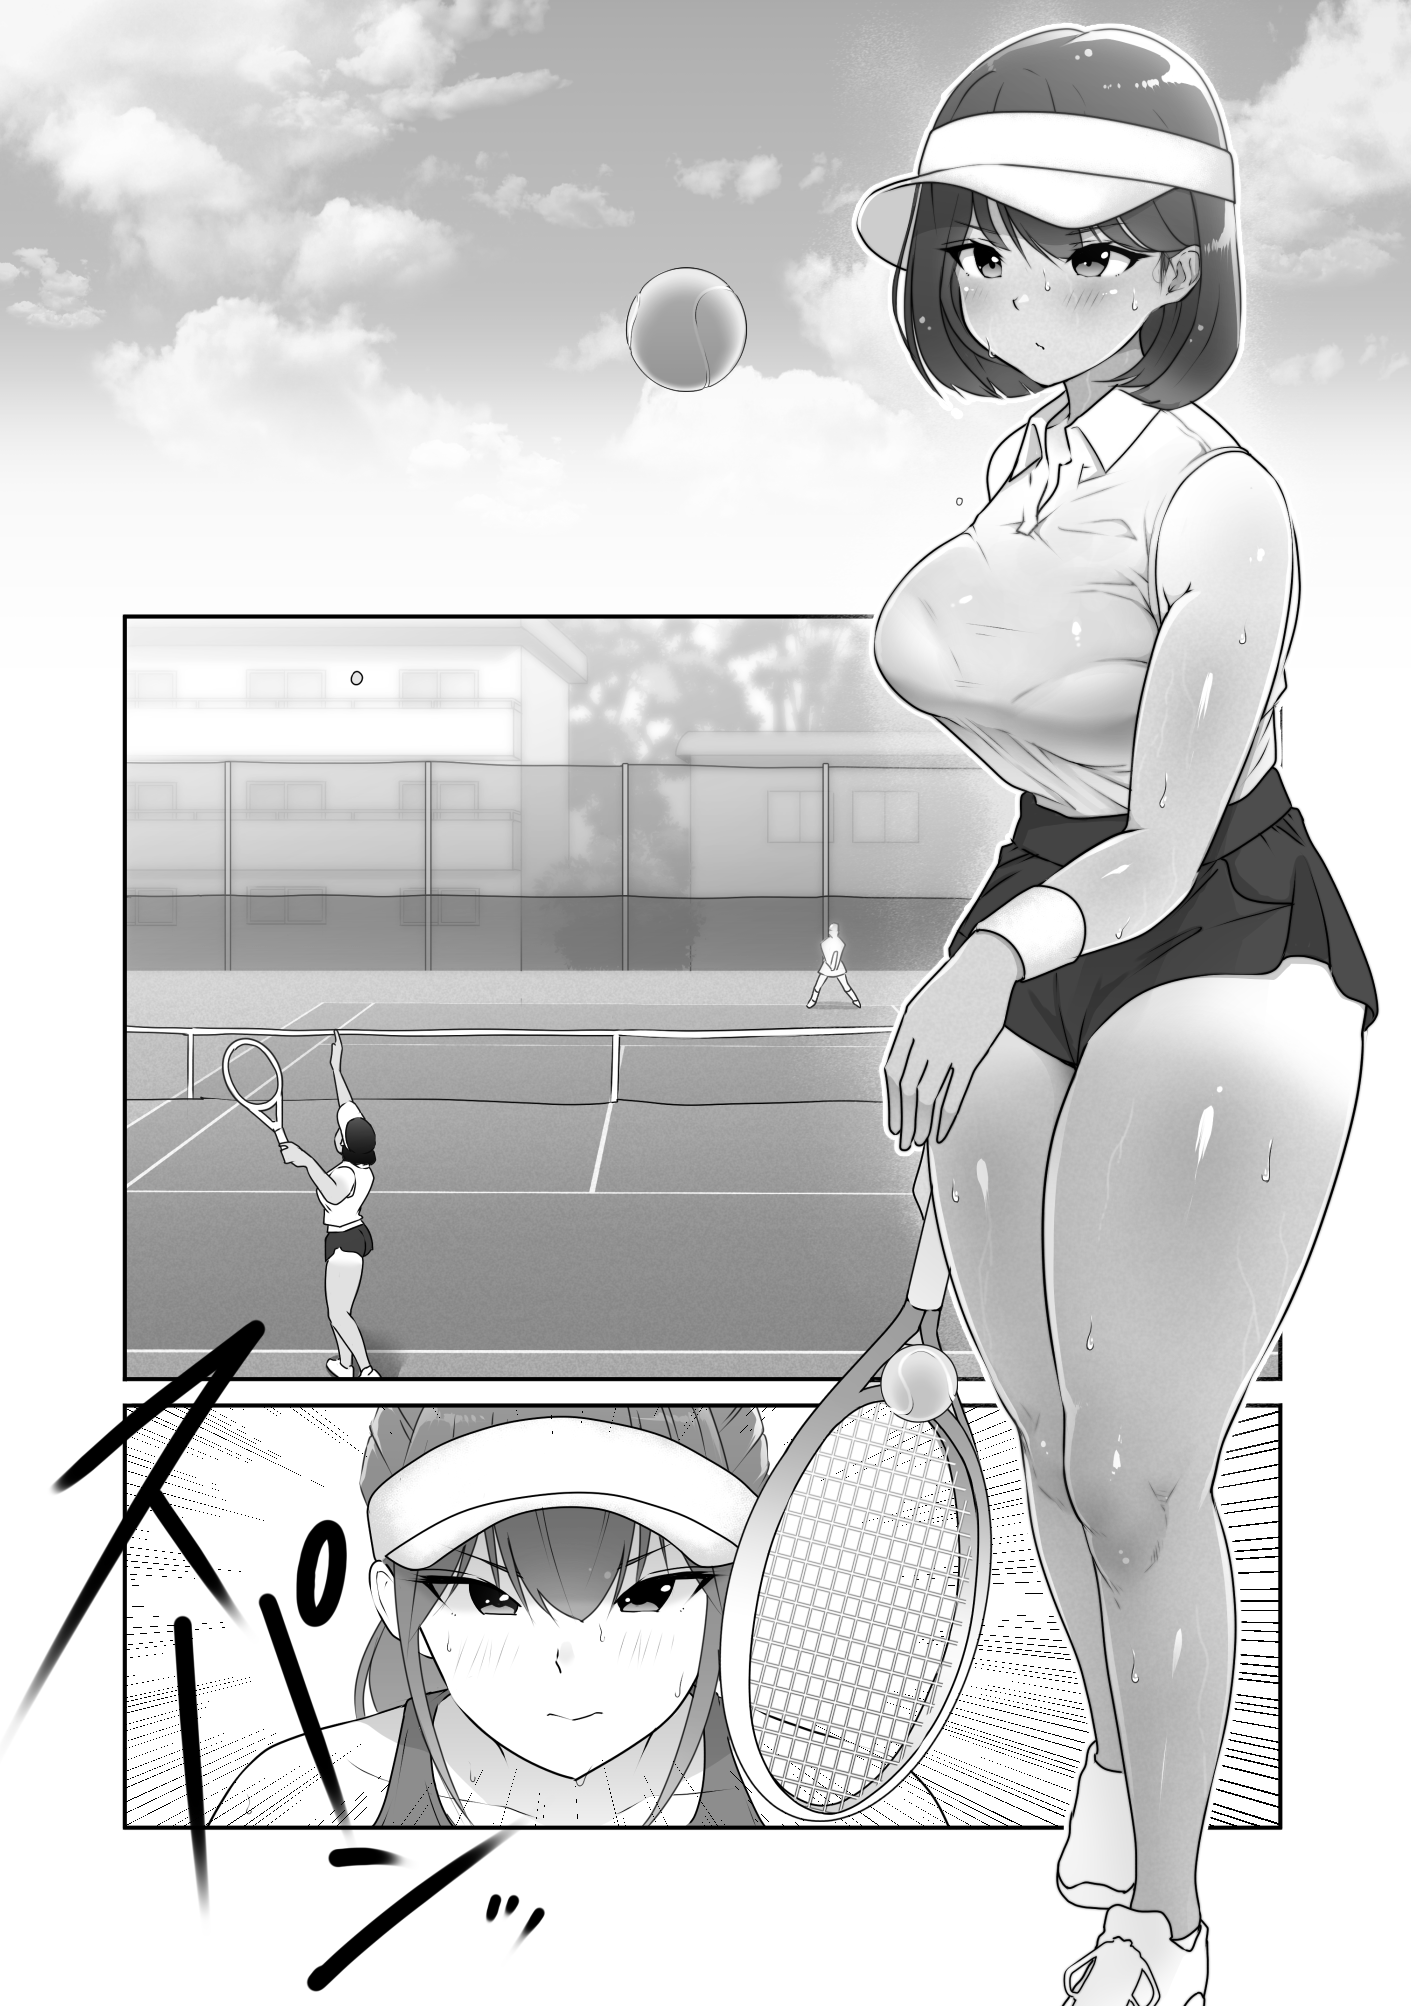 テニス部は野球部の手に堕ちました-4 【エロ漫画JK】野球部員達の性欲の餌食となったテニス部の巨乳ちゃんの運命が